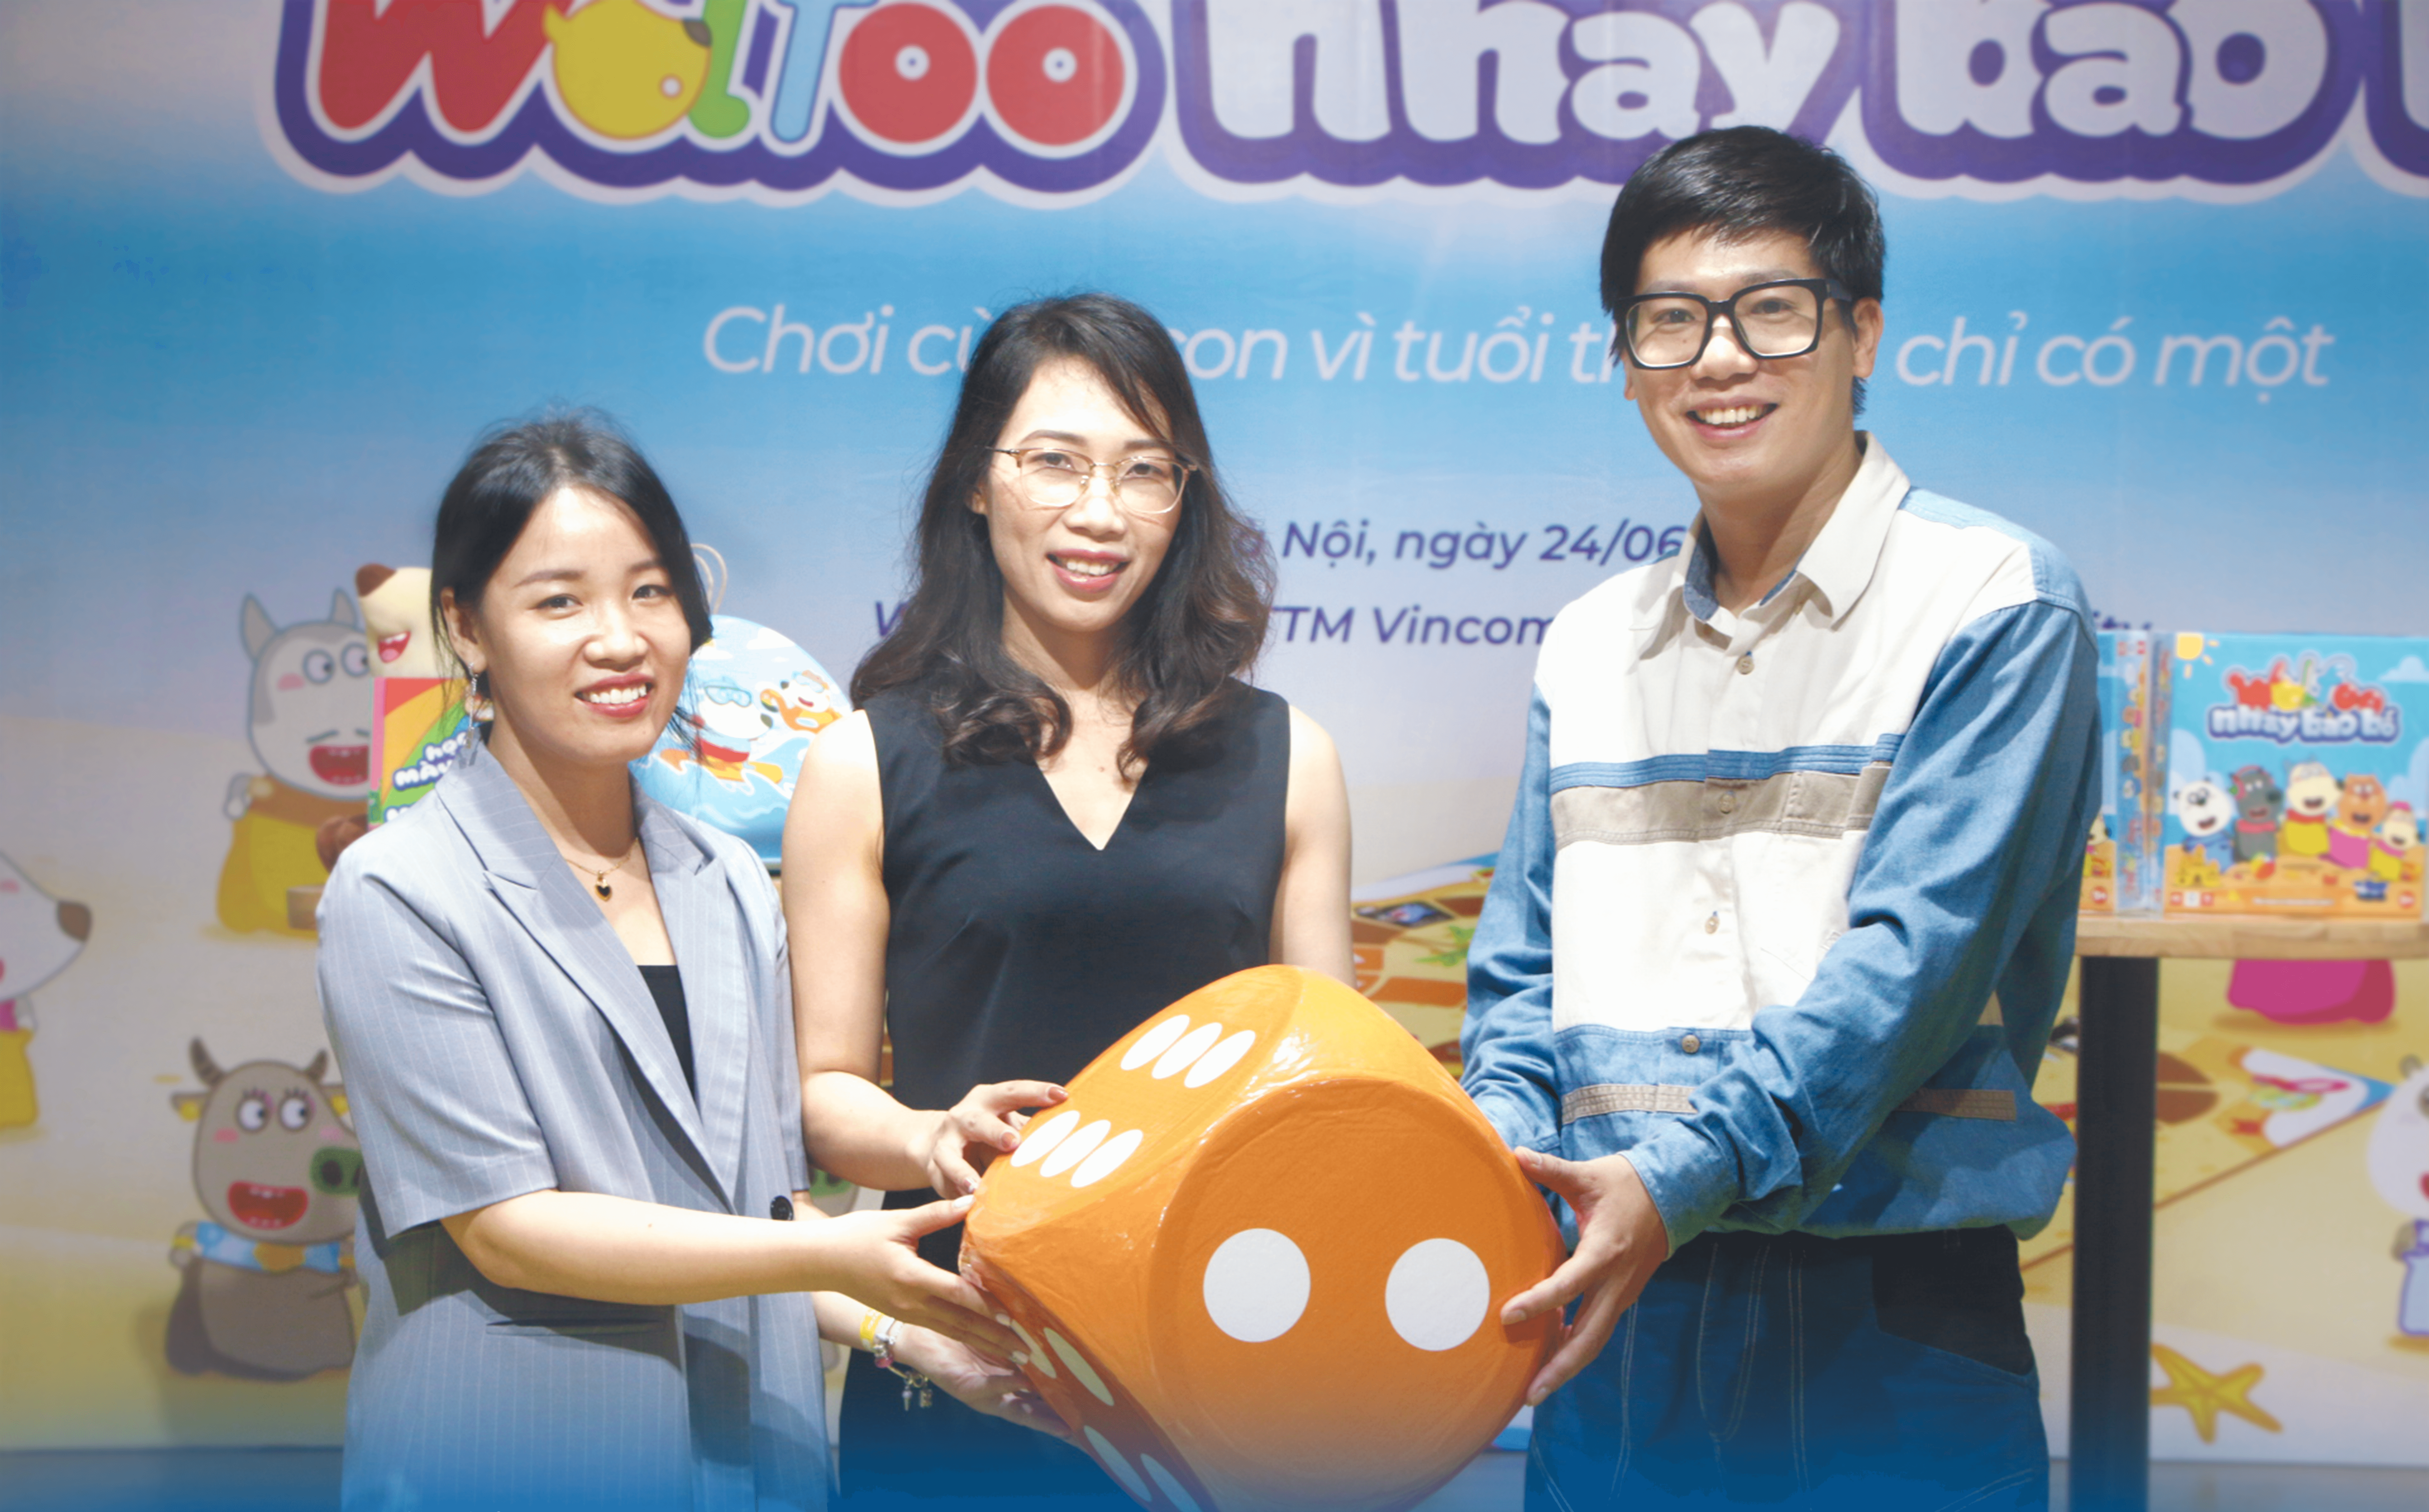 Ra mắt board game Wolfoo Nhảy Bao Bố kết hợp giá trị giáo dục và giải trí